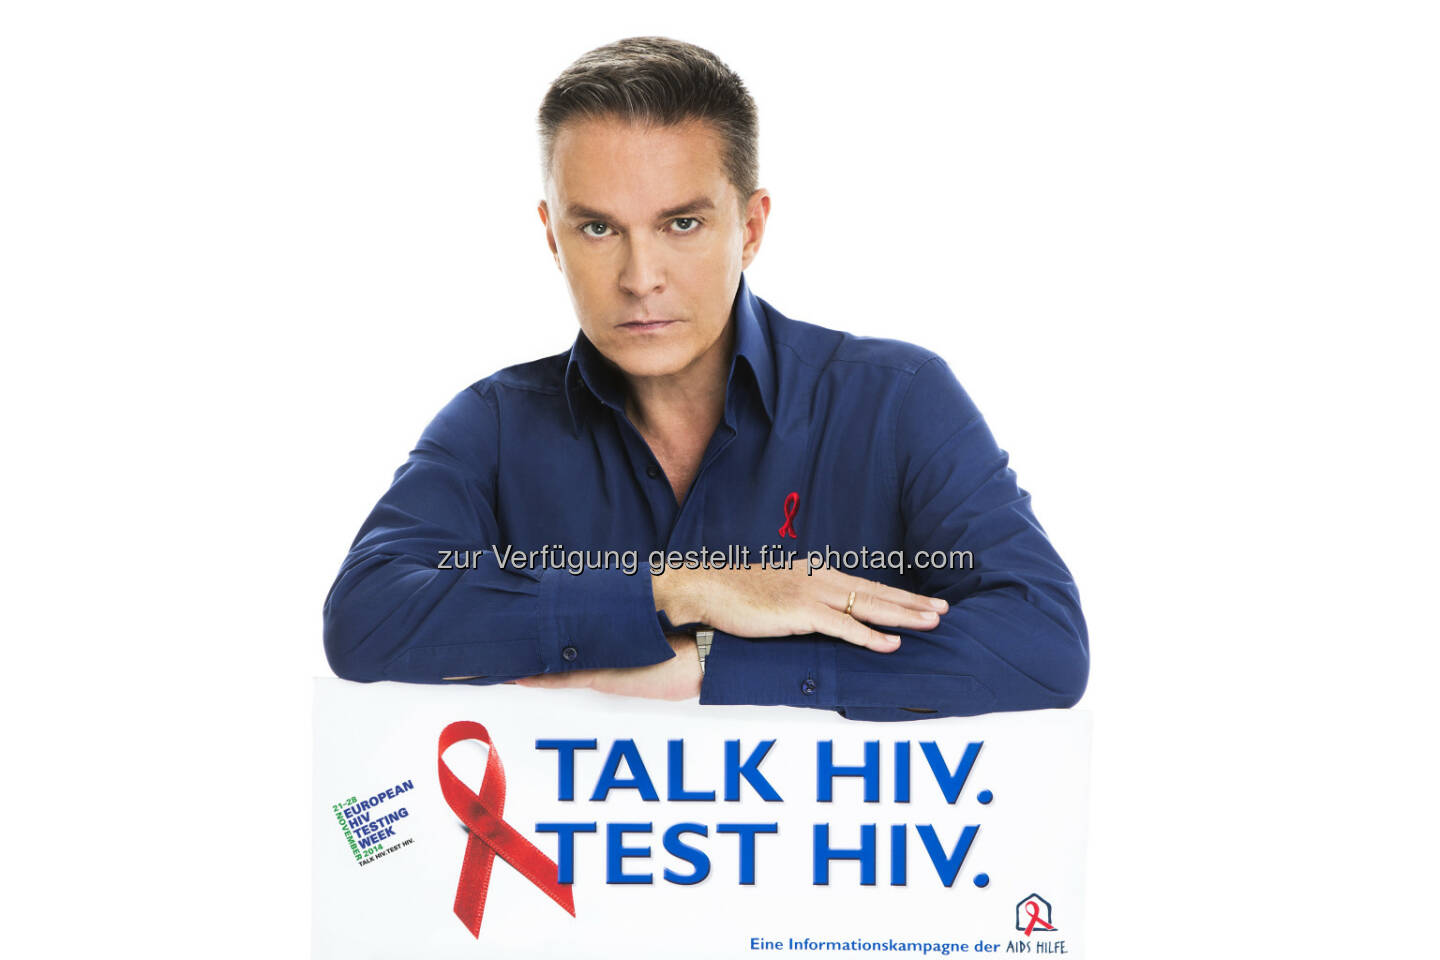 Alfons Haider (Kampagnenbotschafter der HIV-Testwoche) - Start der European HIV Testing Week. Die Aids Hilfe Wien sowie HIV-ExpertInnen aus dem Gesundheitsbereich beteiligen sich (Bild: Jürgen Hammerschmid für Aids Hilfe Wien)